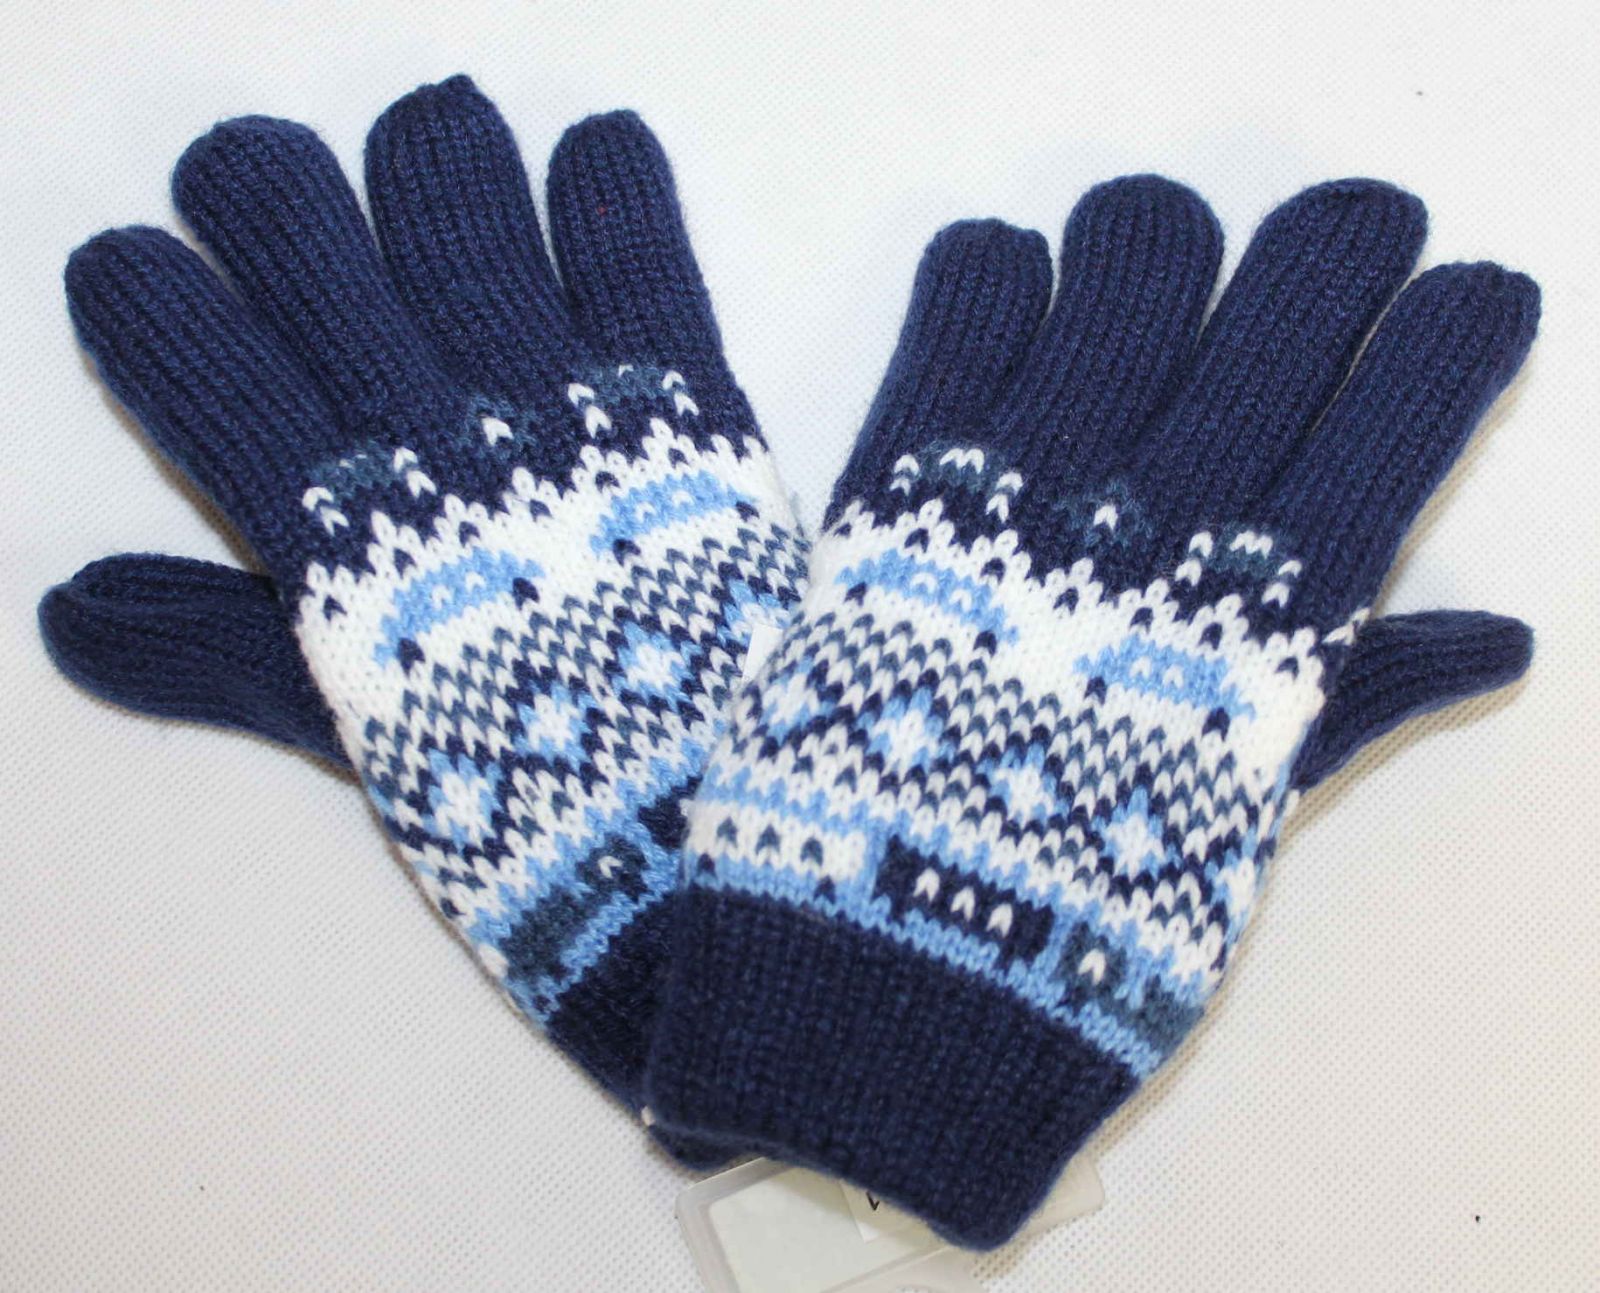 Dětské prstové rukavice, modré prstové rukavice, úpletové rukavice, pletené rukavice, dívčí prstové rukavice, teplé rukavice, chlapecké prstové rukavice